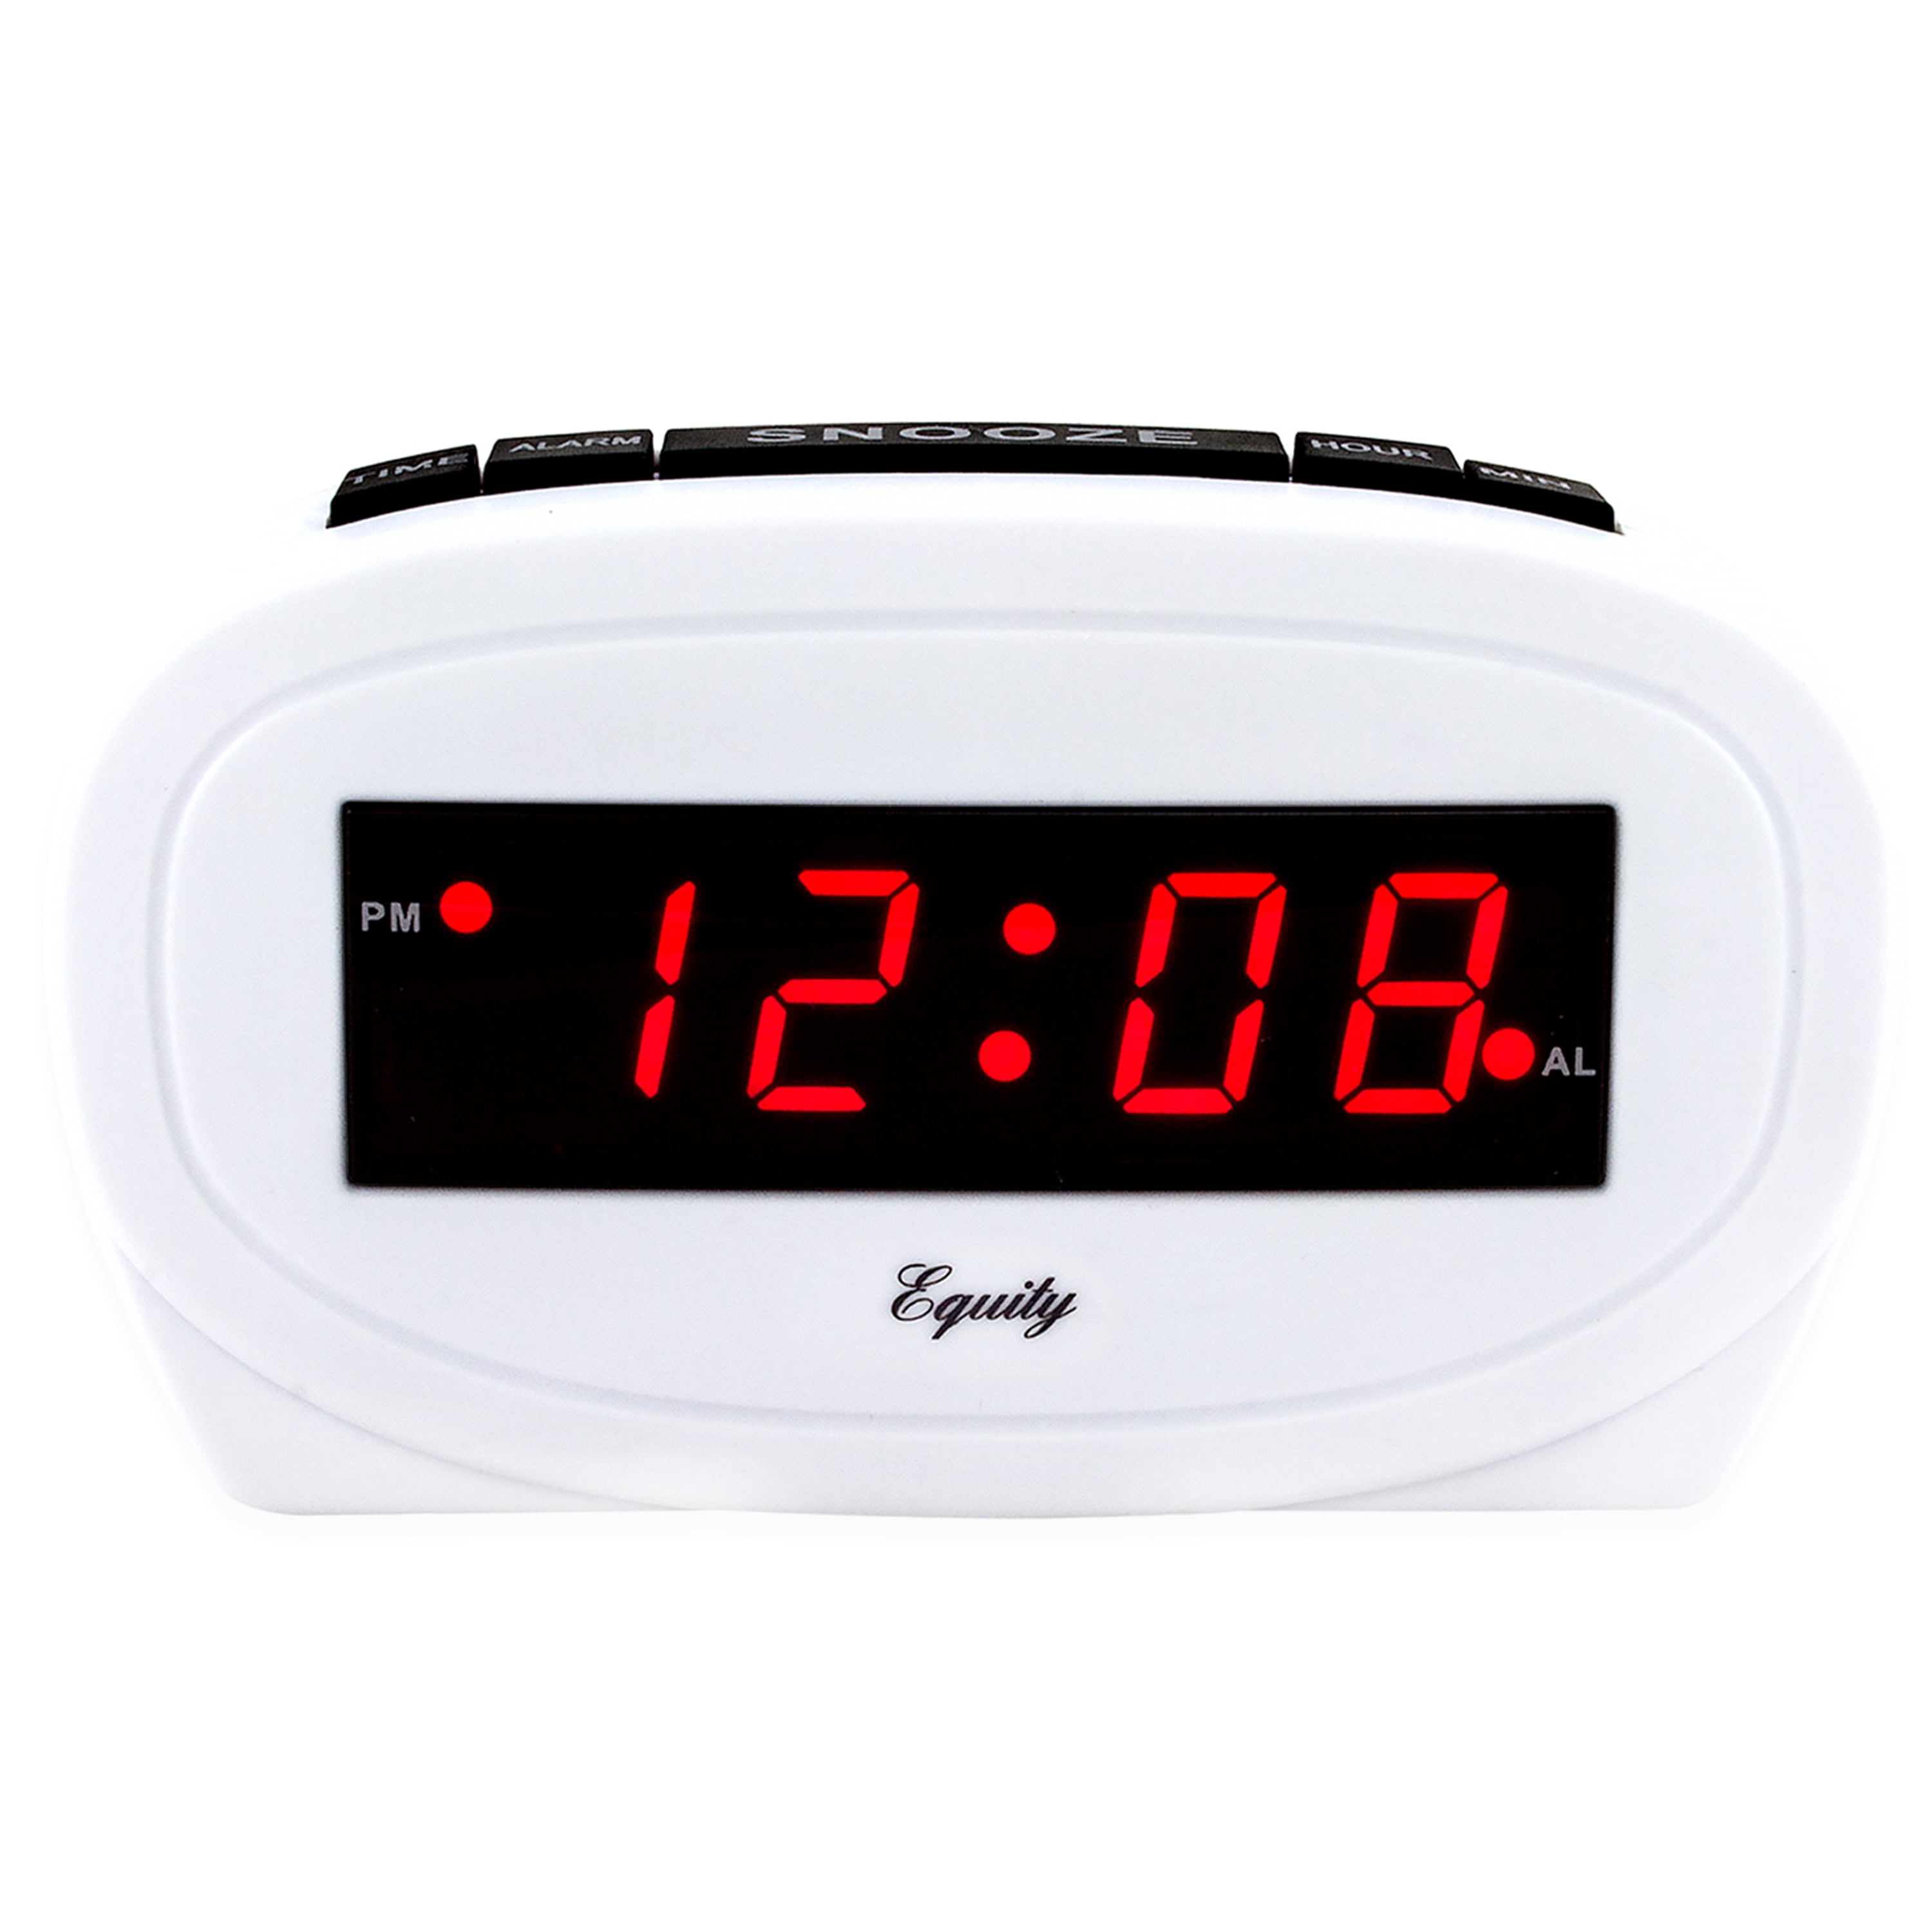 30228 Equity by La Crosse 0.6" Red LED Display Digital Alarm Clock 